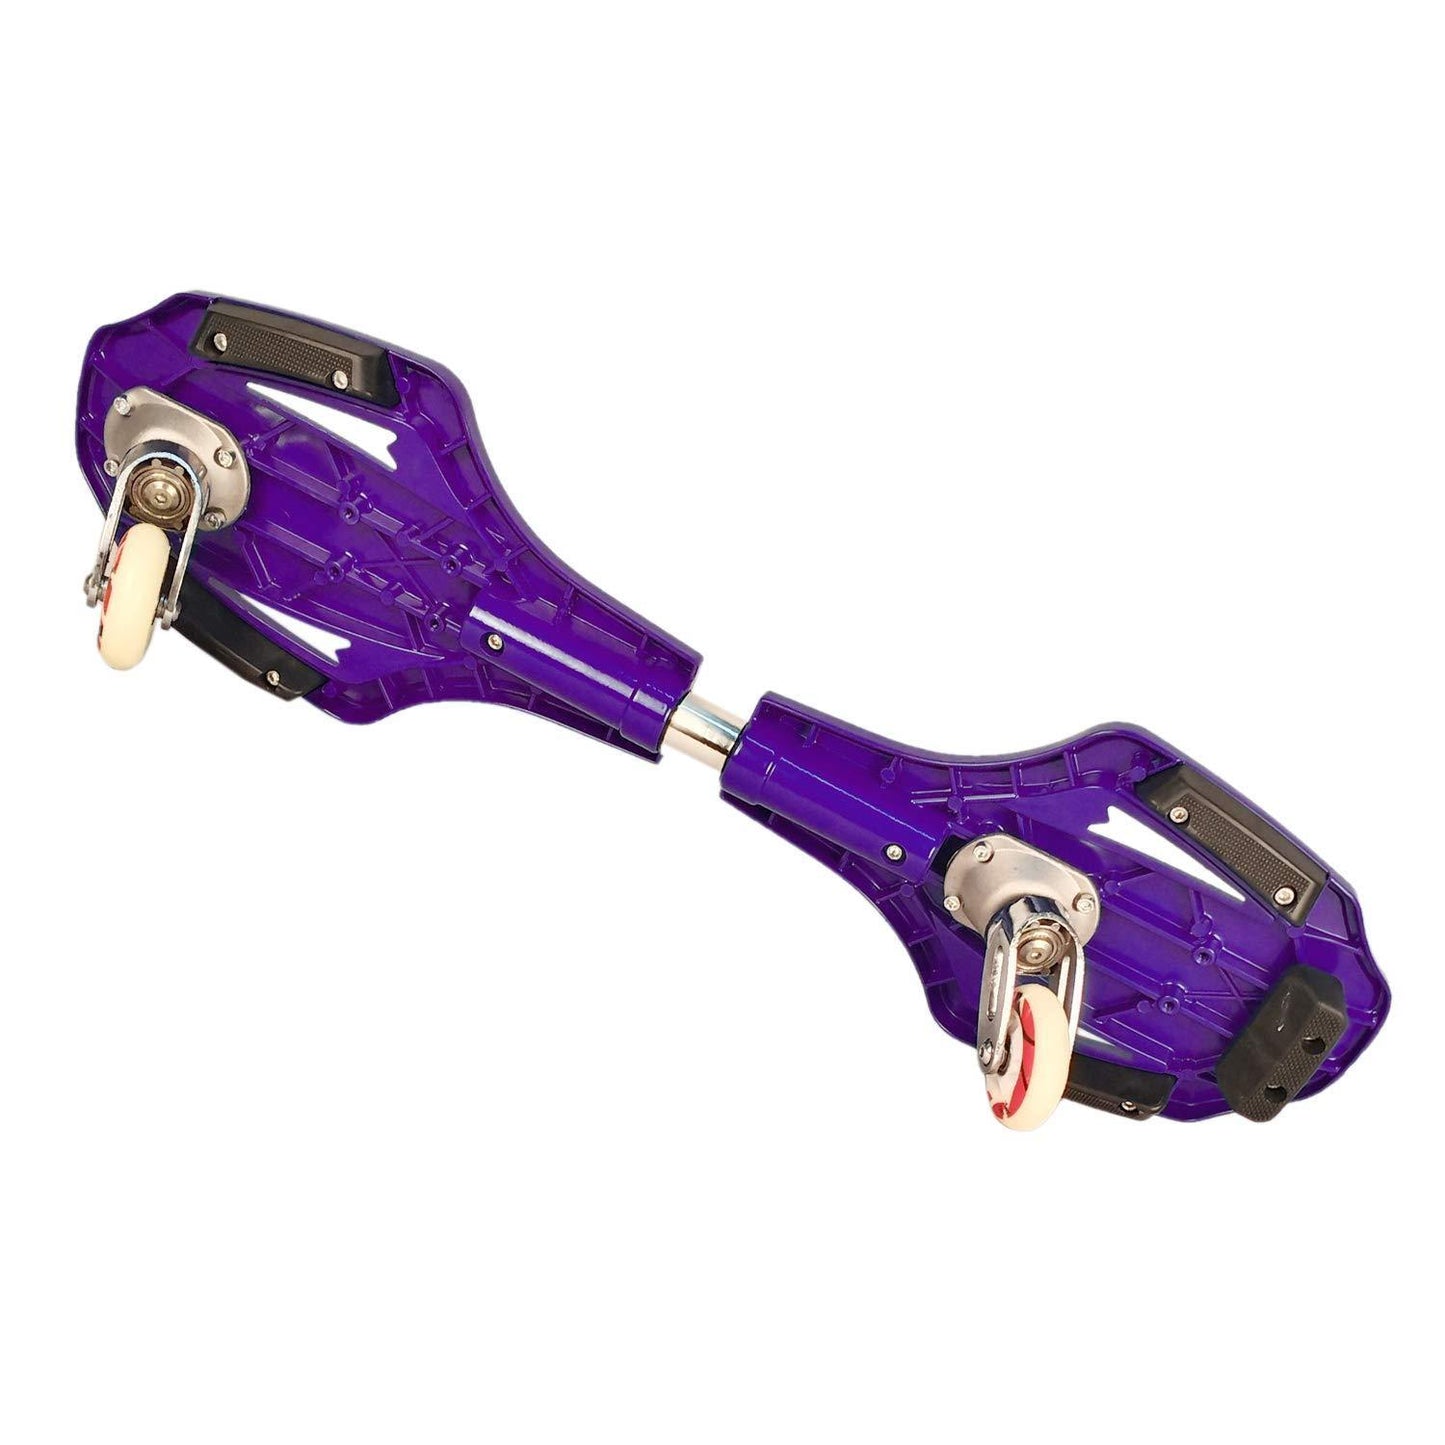 Prokick Wave Board, Snake Board with PU Wheel - Purple - Best Price online Prokicksports.com